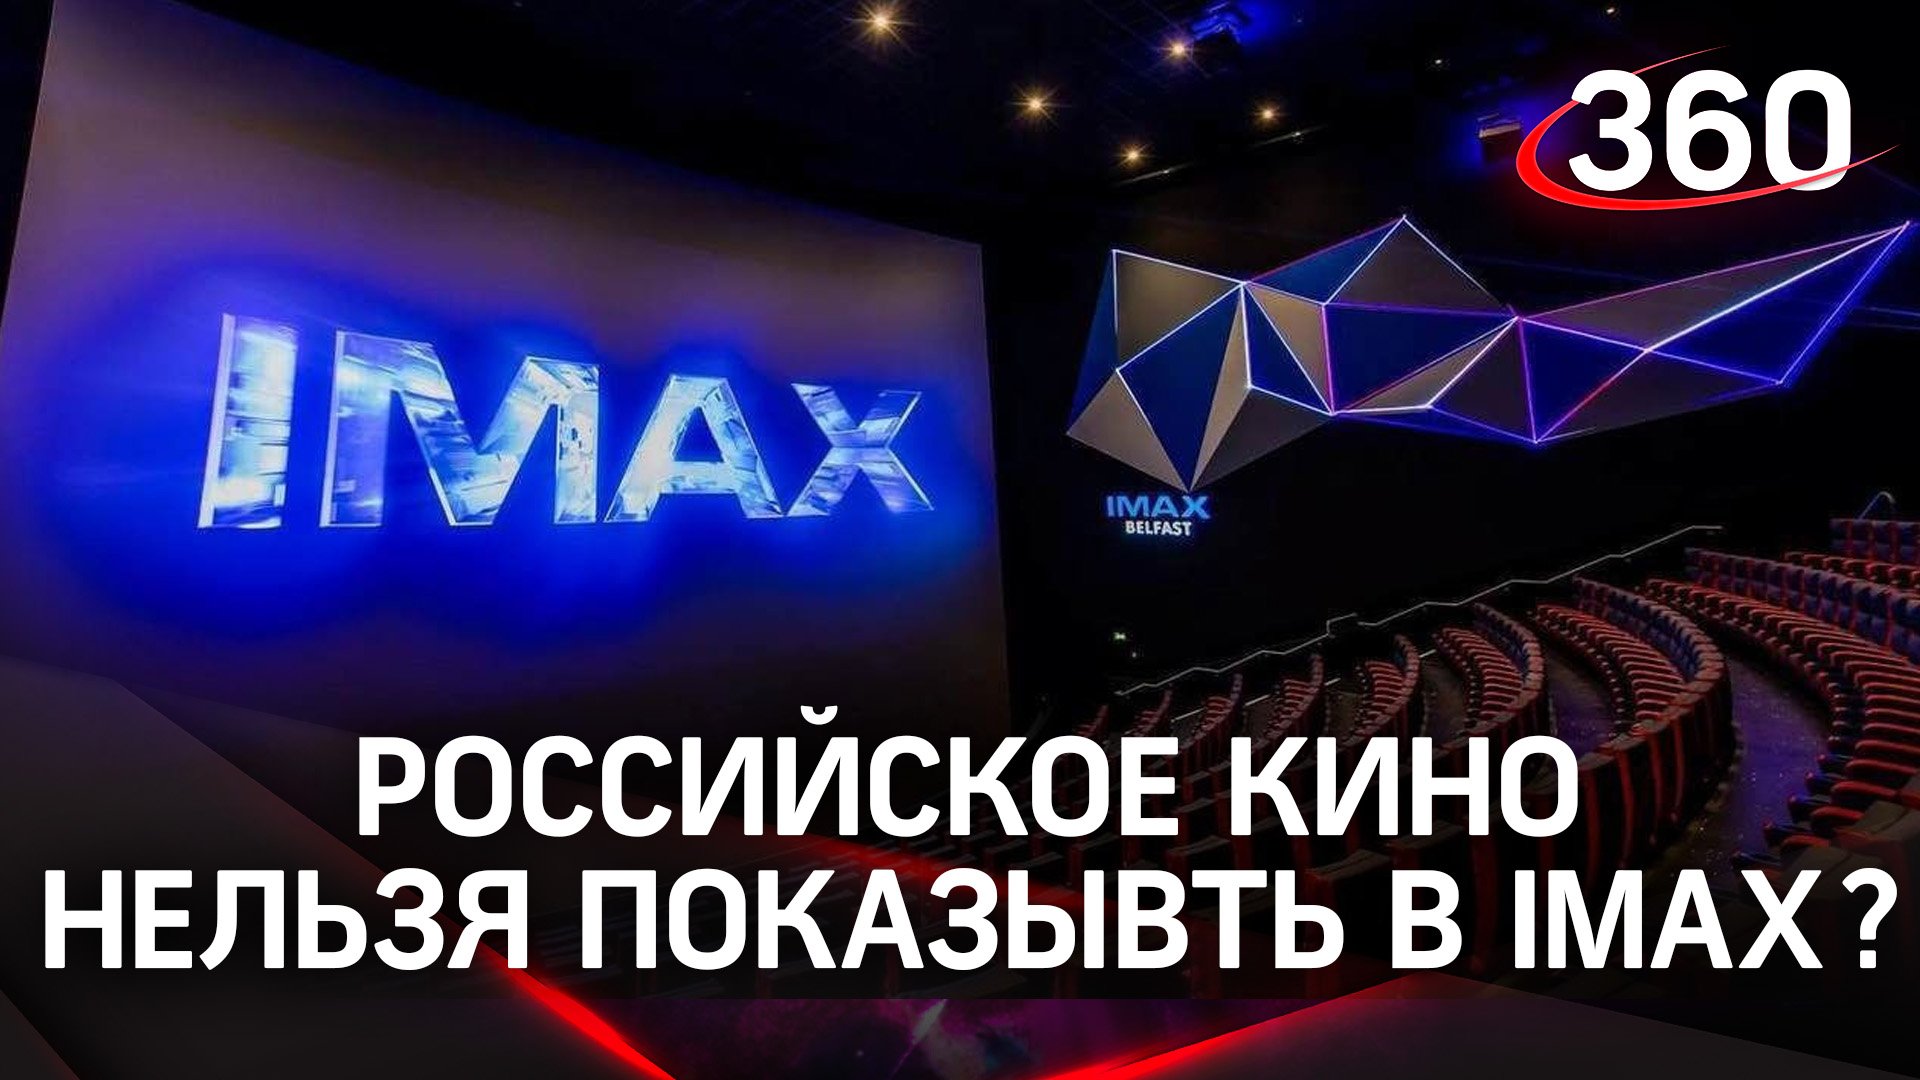 IMAX запретил показывать фильмы РФ, Storytel и Bosch уходят. «Добрый» заменит Sprite и Fanta